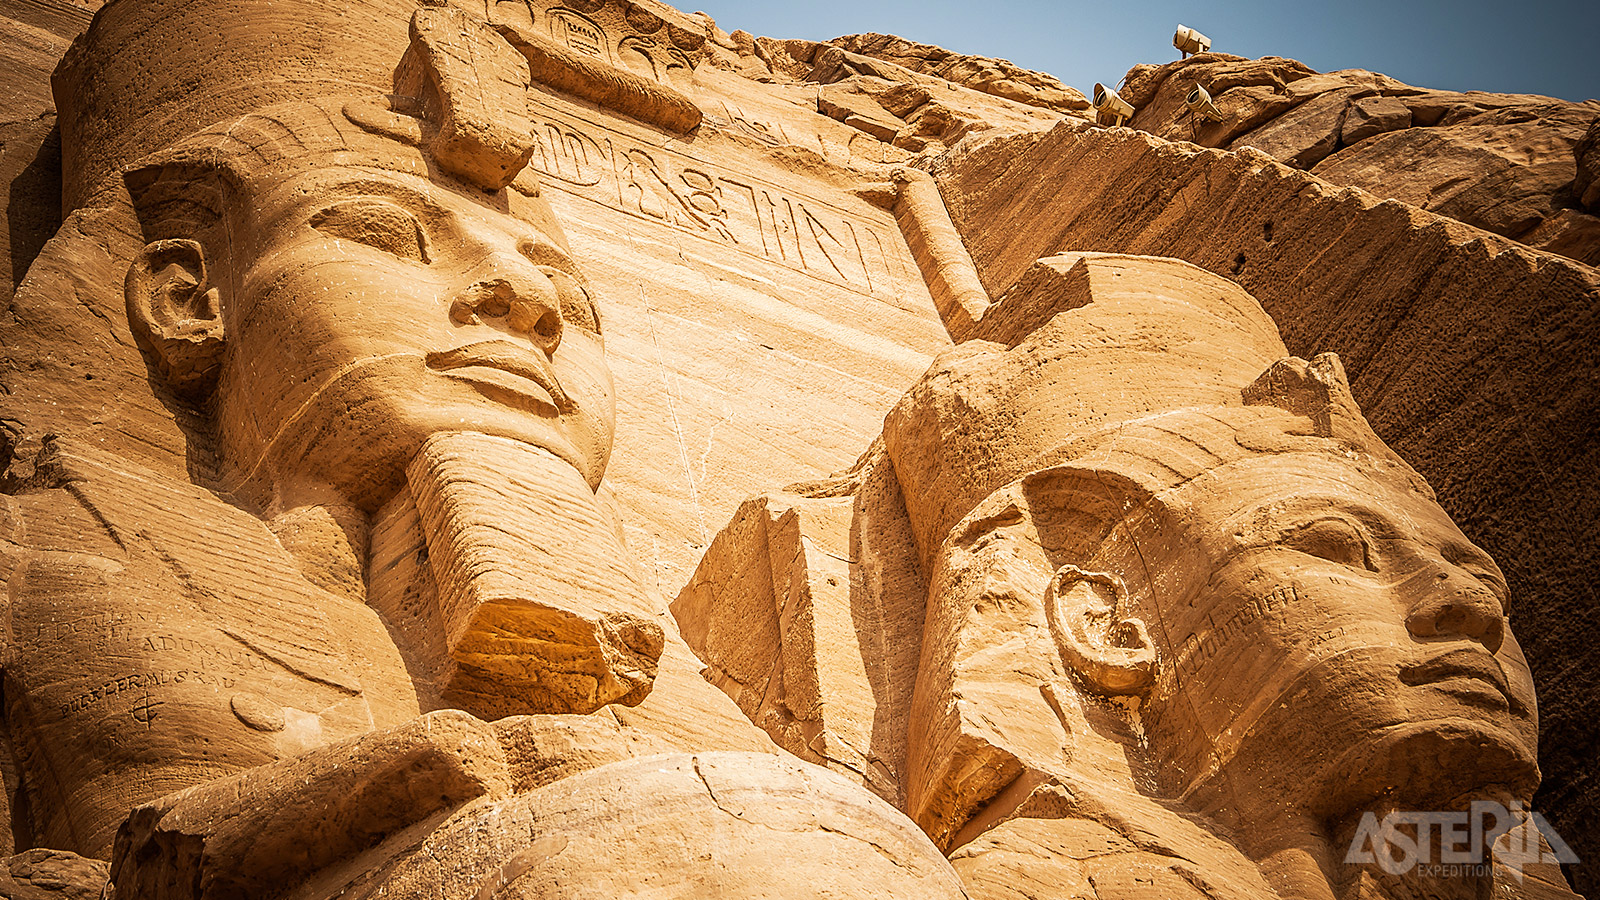 De 2 tempels werden uit een berg gehouwen in opdracht van Ramses II om zichzelf en zijn koningin Nefertari te eren